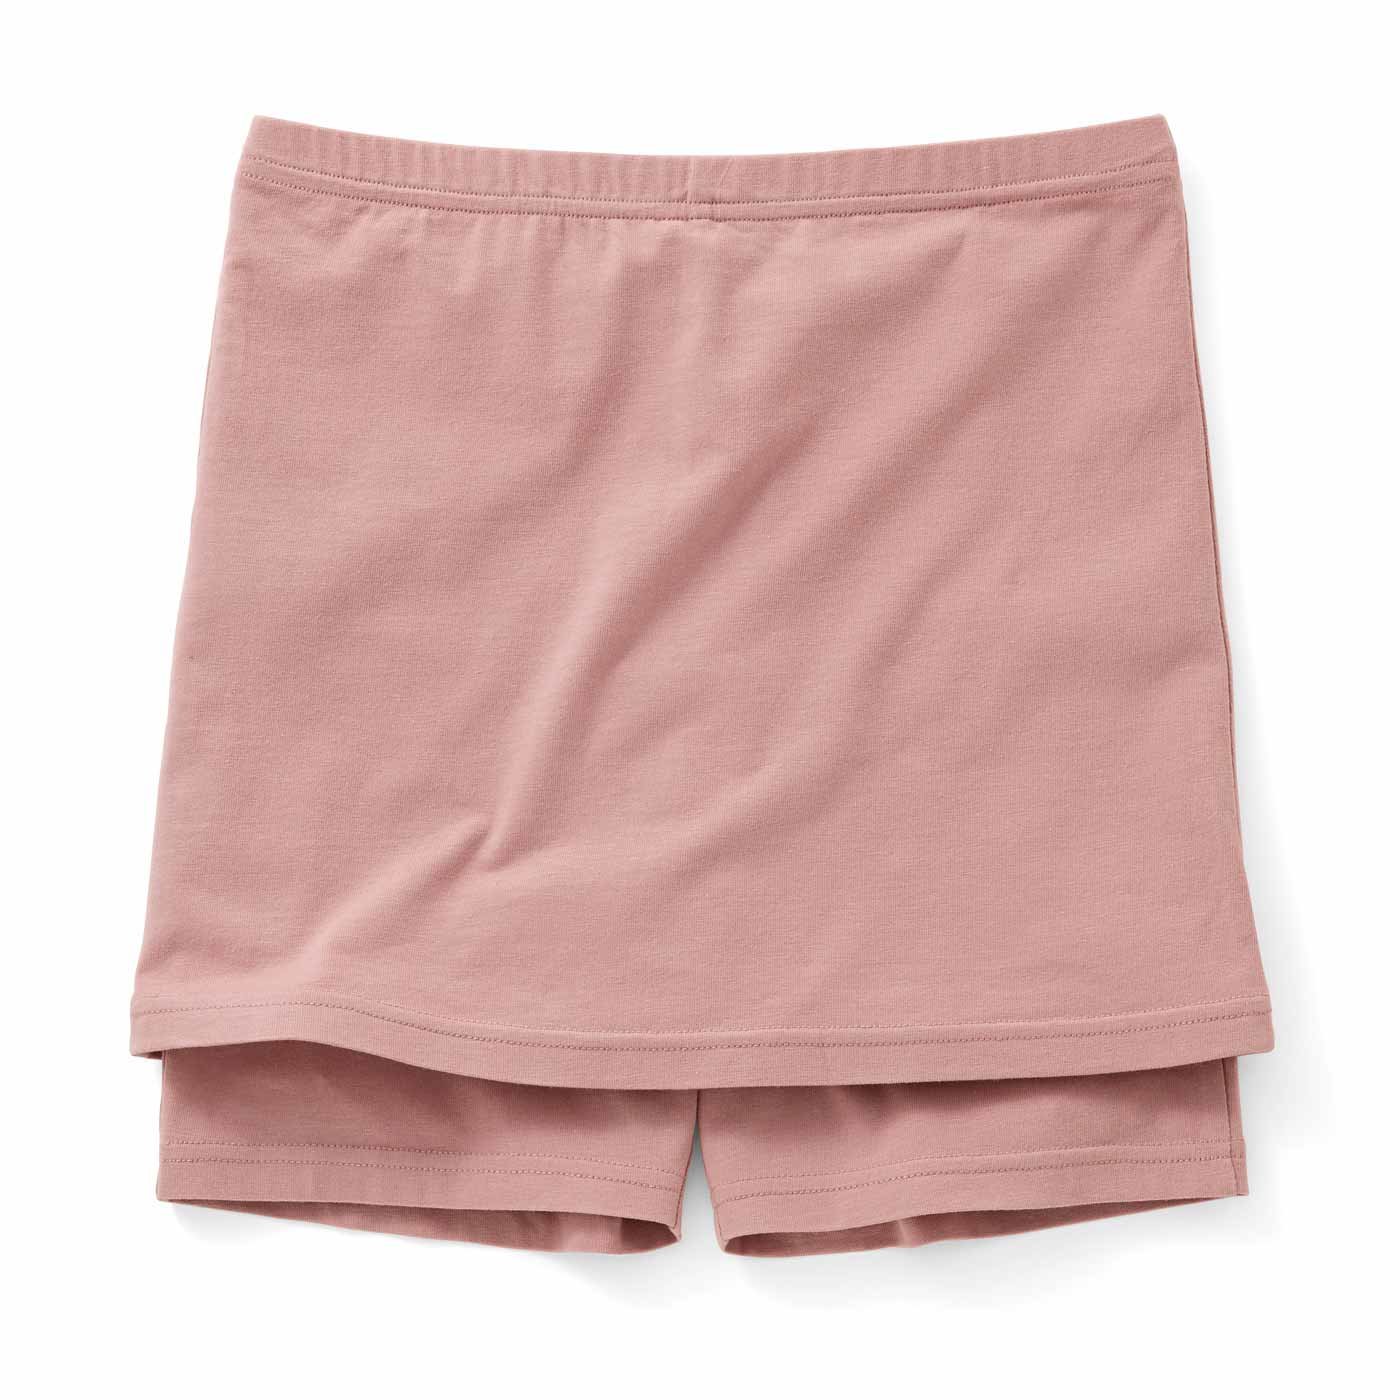 またのY字ラインをカバー スカート決まる ペチコート付きオーバーパンツ〈ピンク〉